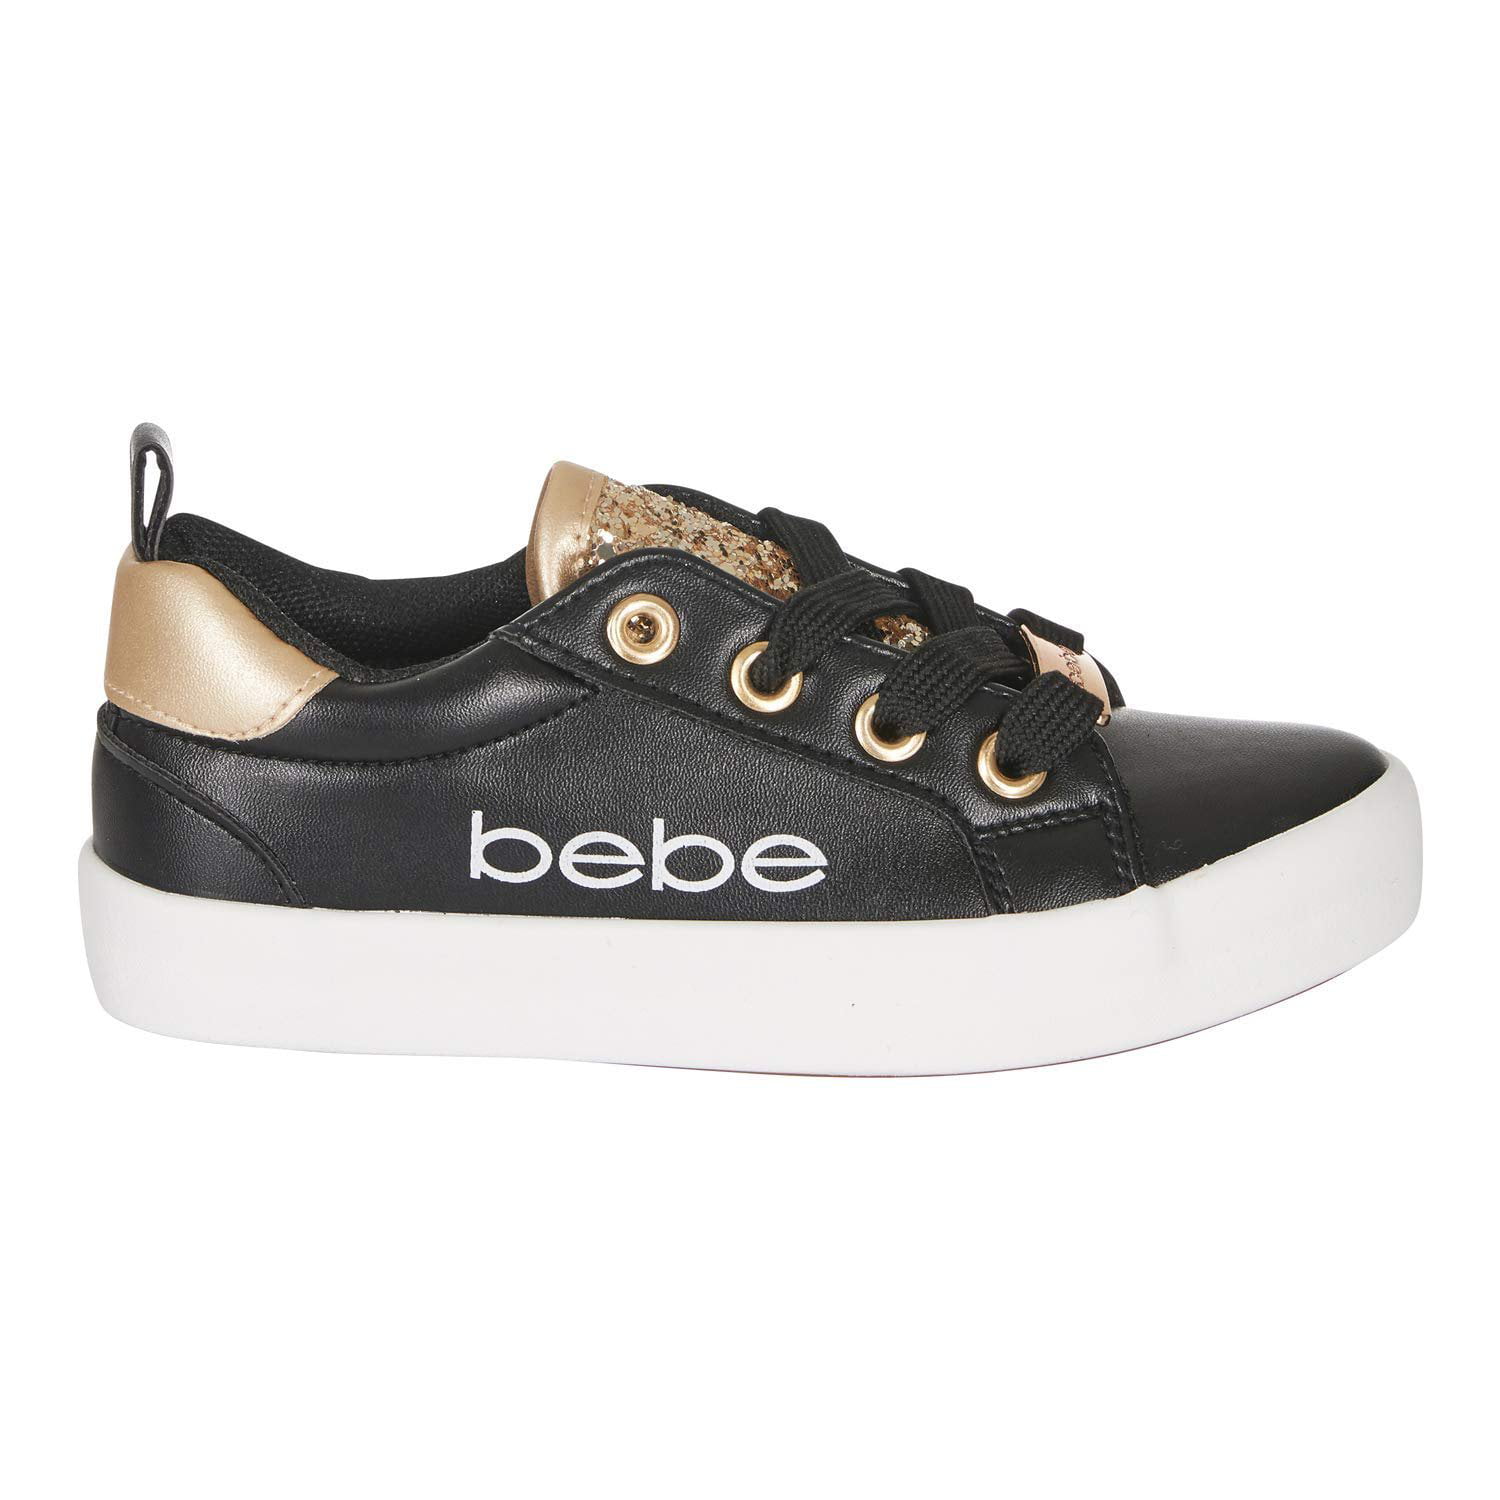 bebe sport sneakers shoes